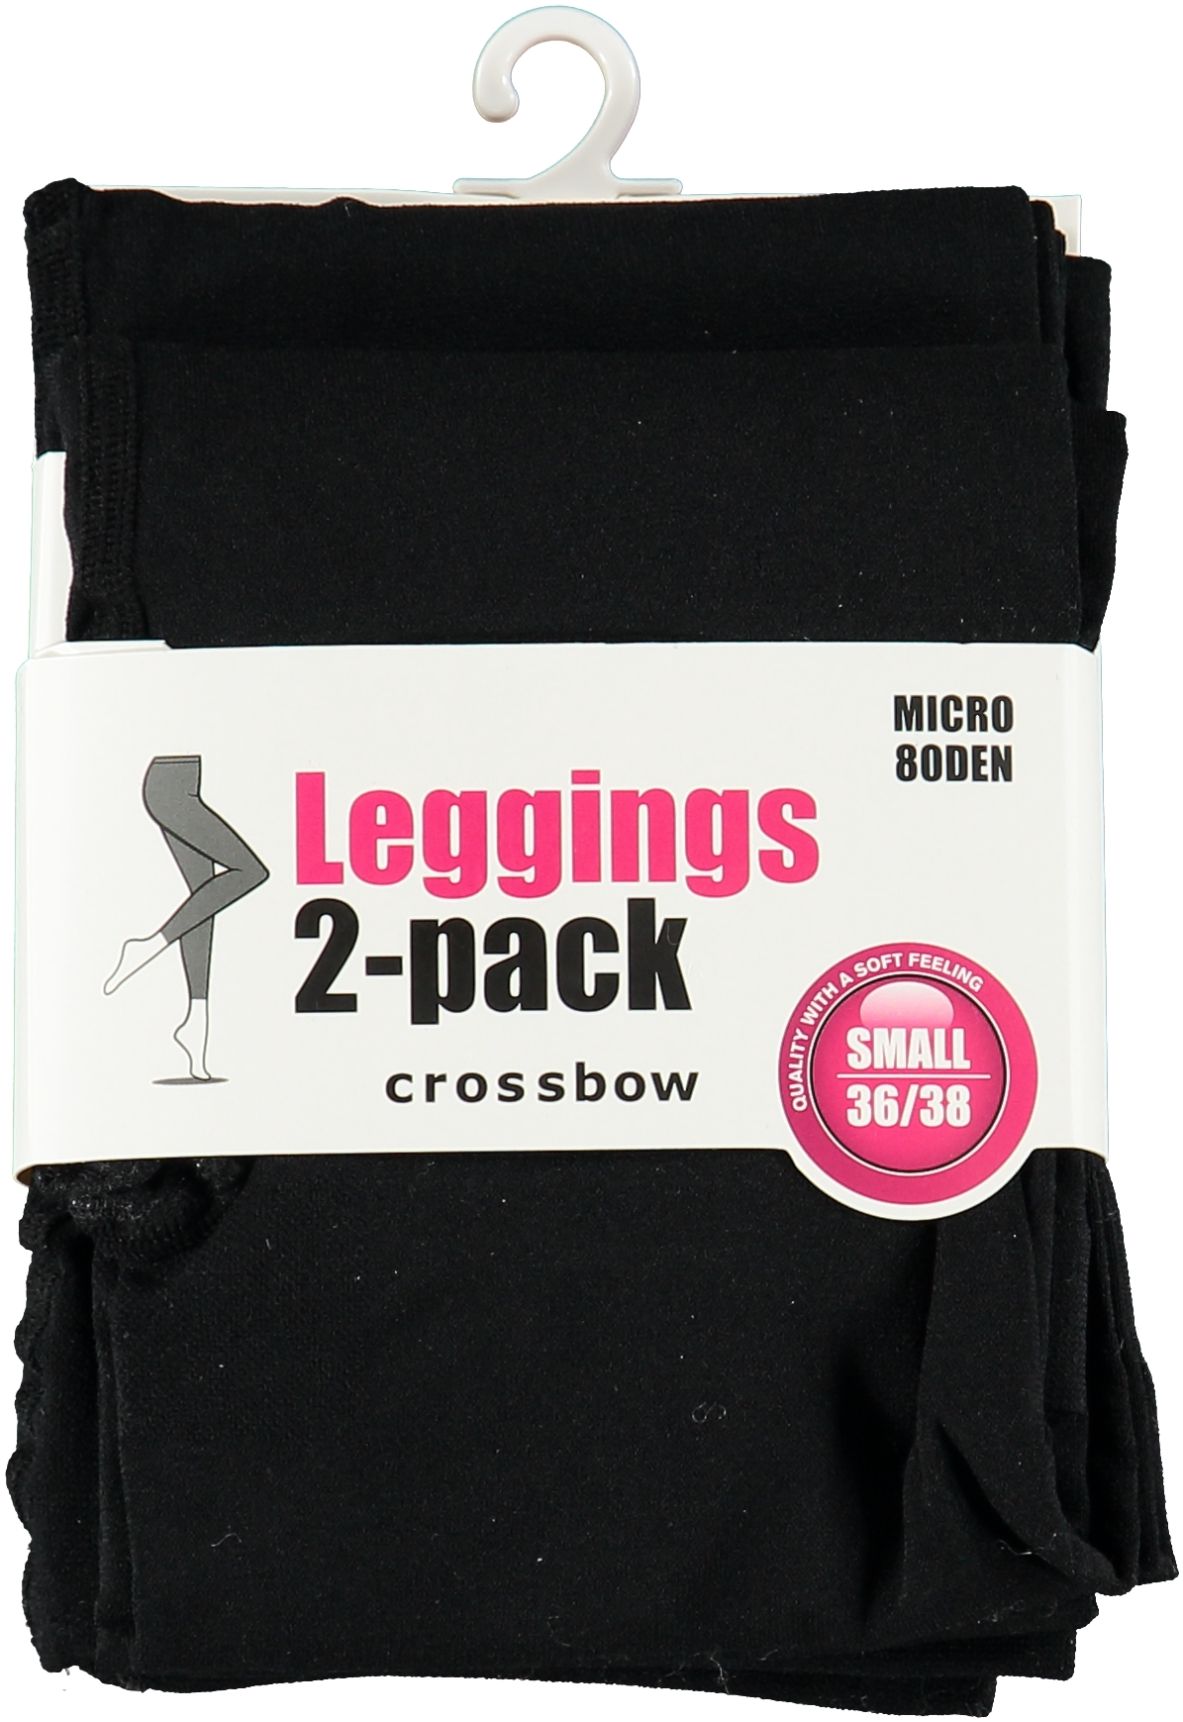 Leggings i 2-pack från Crossbow. Färg: Svart.